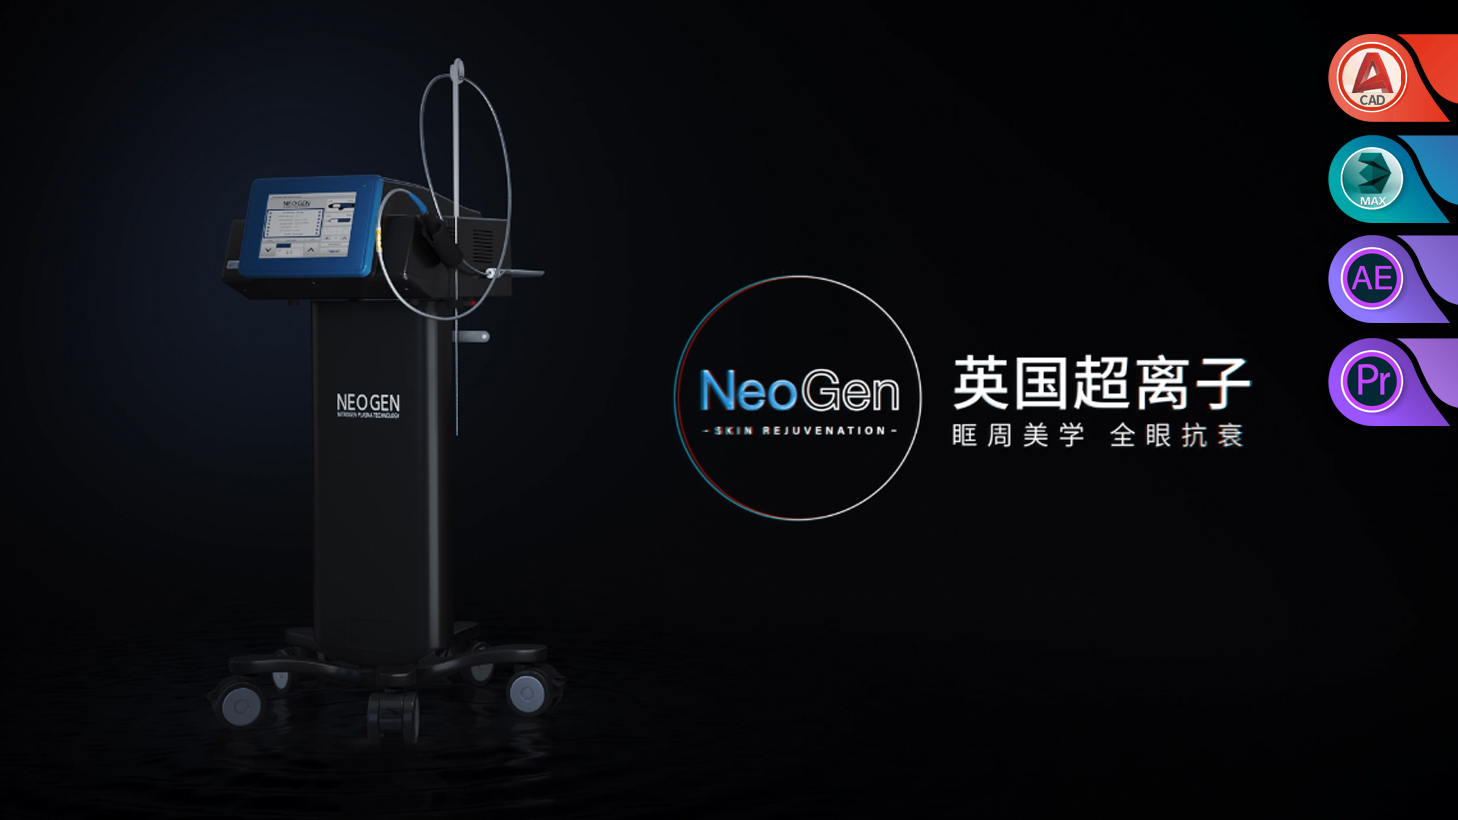 【产品动画】-Neo Gen超离子美容仪